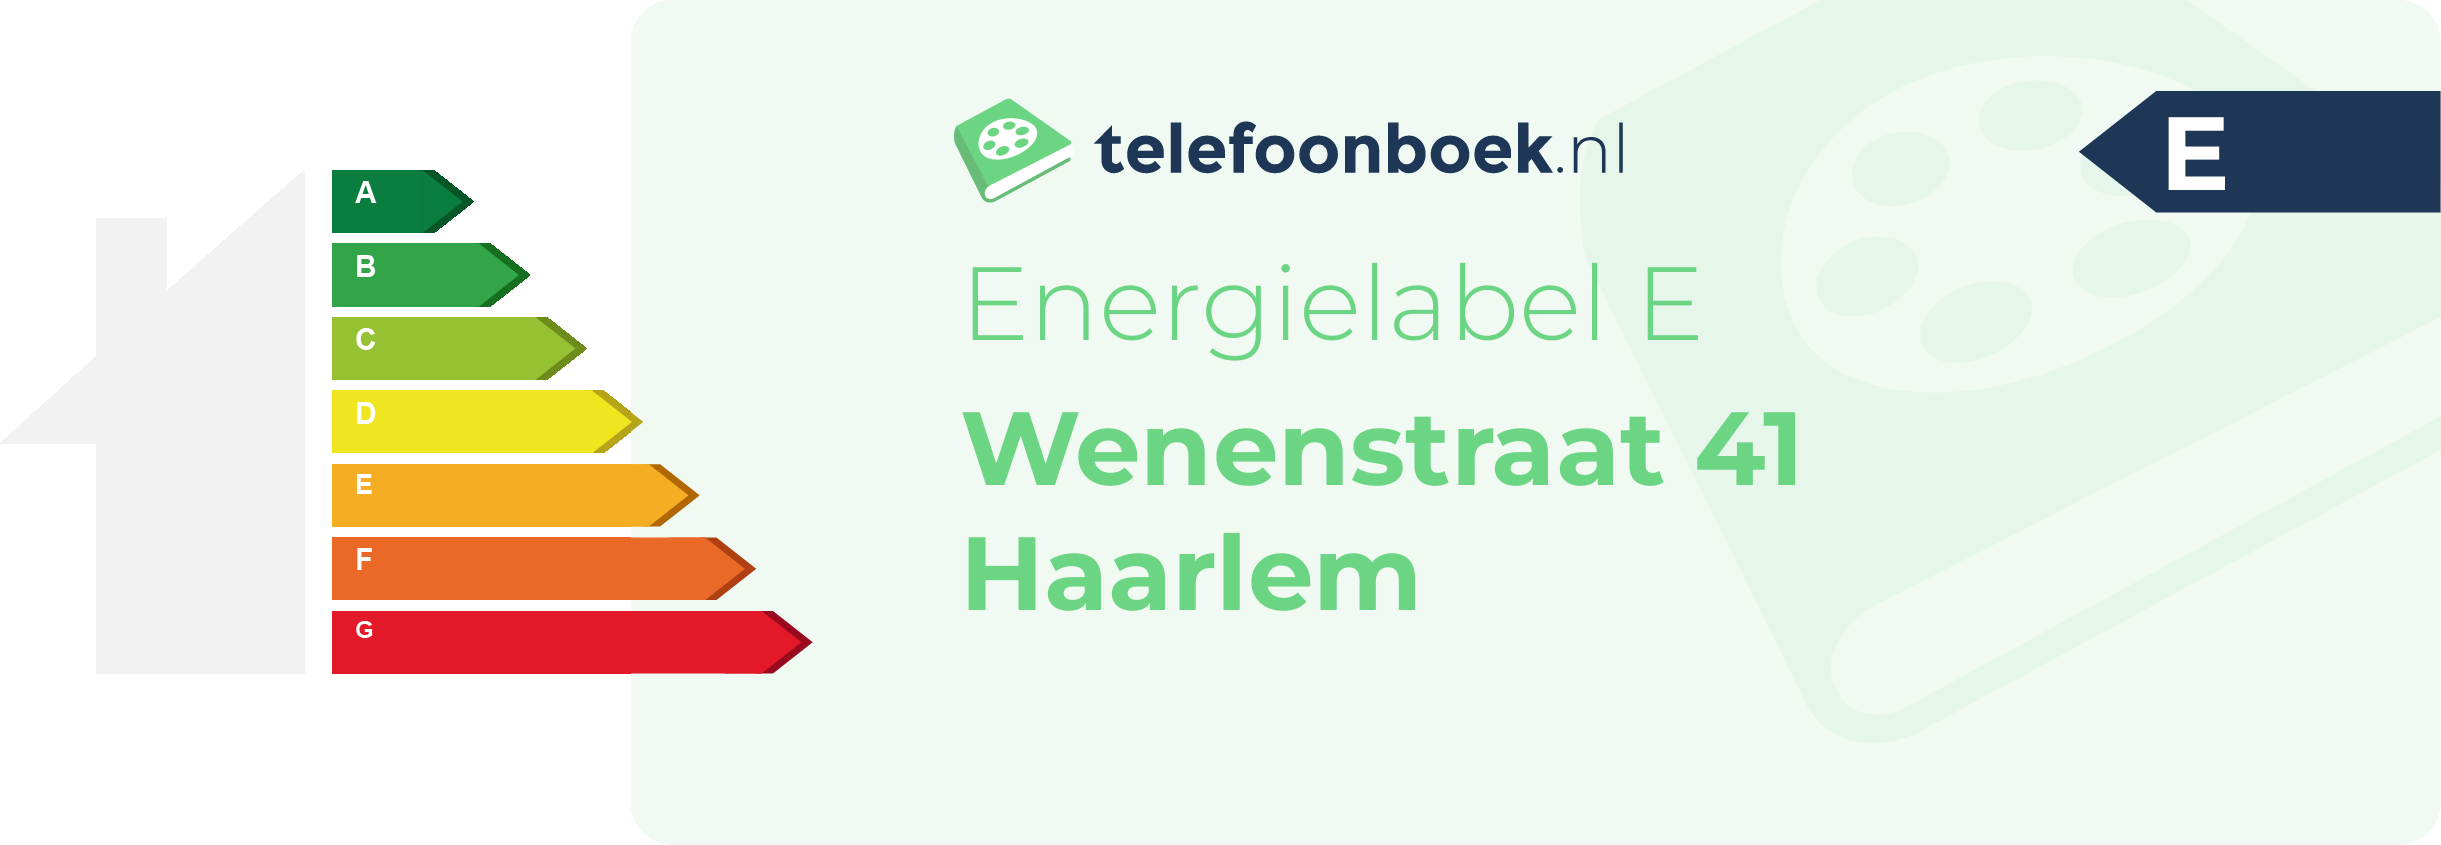 Energielabel Wenenstraat 41 Haarlem